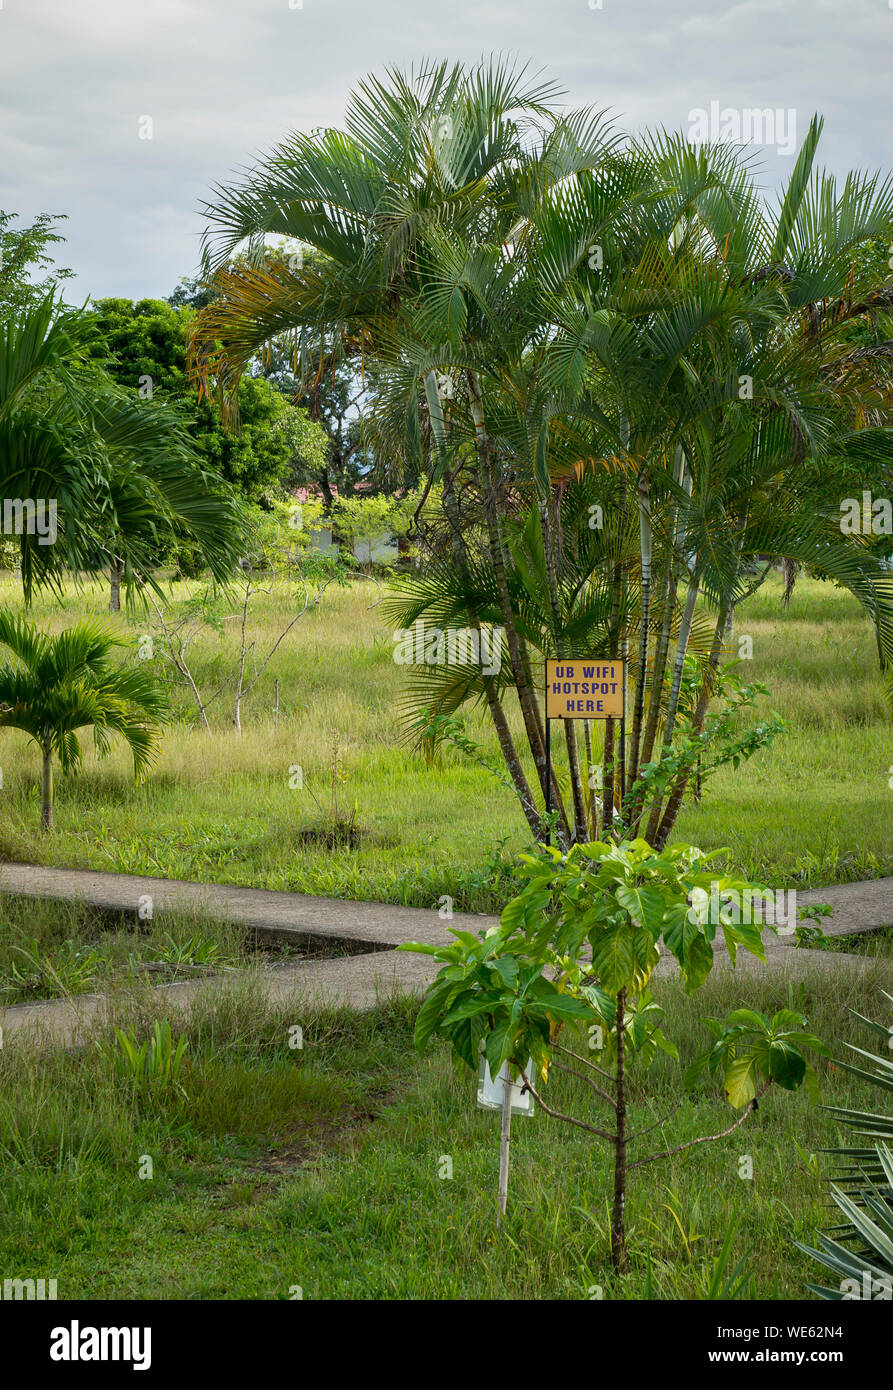 Señal WiFi Hotspot atado a un árbol en el campus de la Universidad de Belice en Belmopan Foto de stock